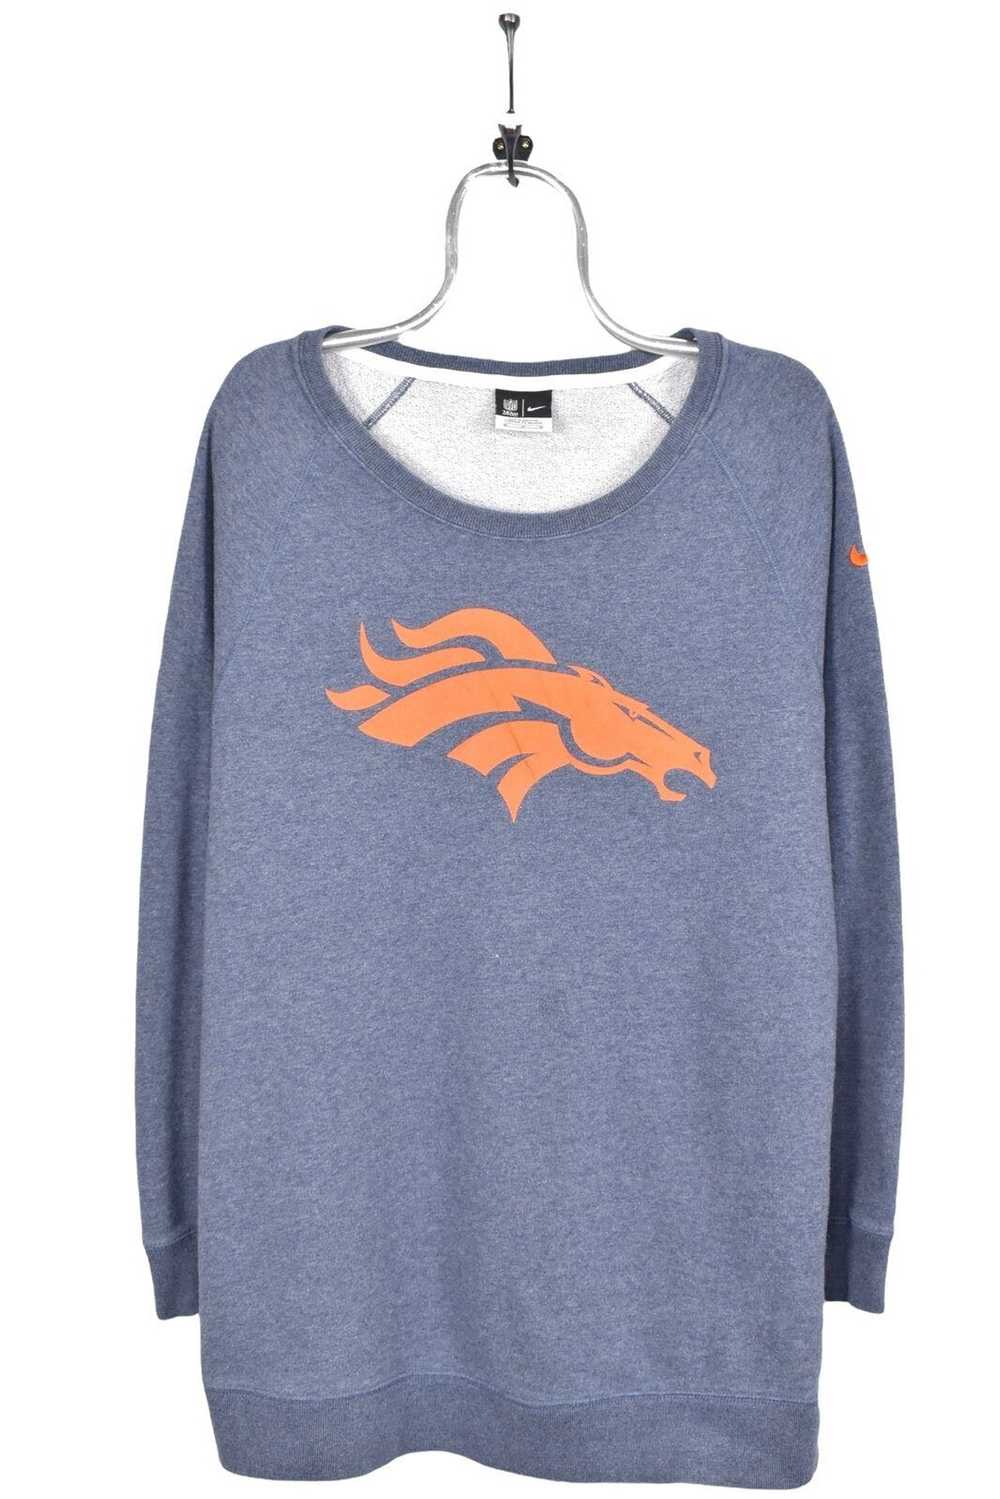 Nike Women's vintage Denver Broncos sweatshirt, N… - image 1